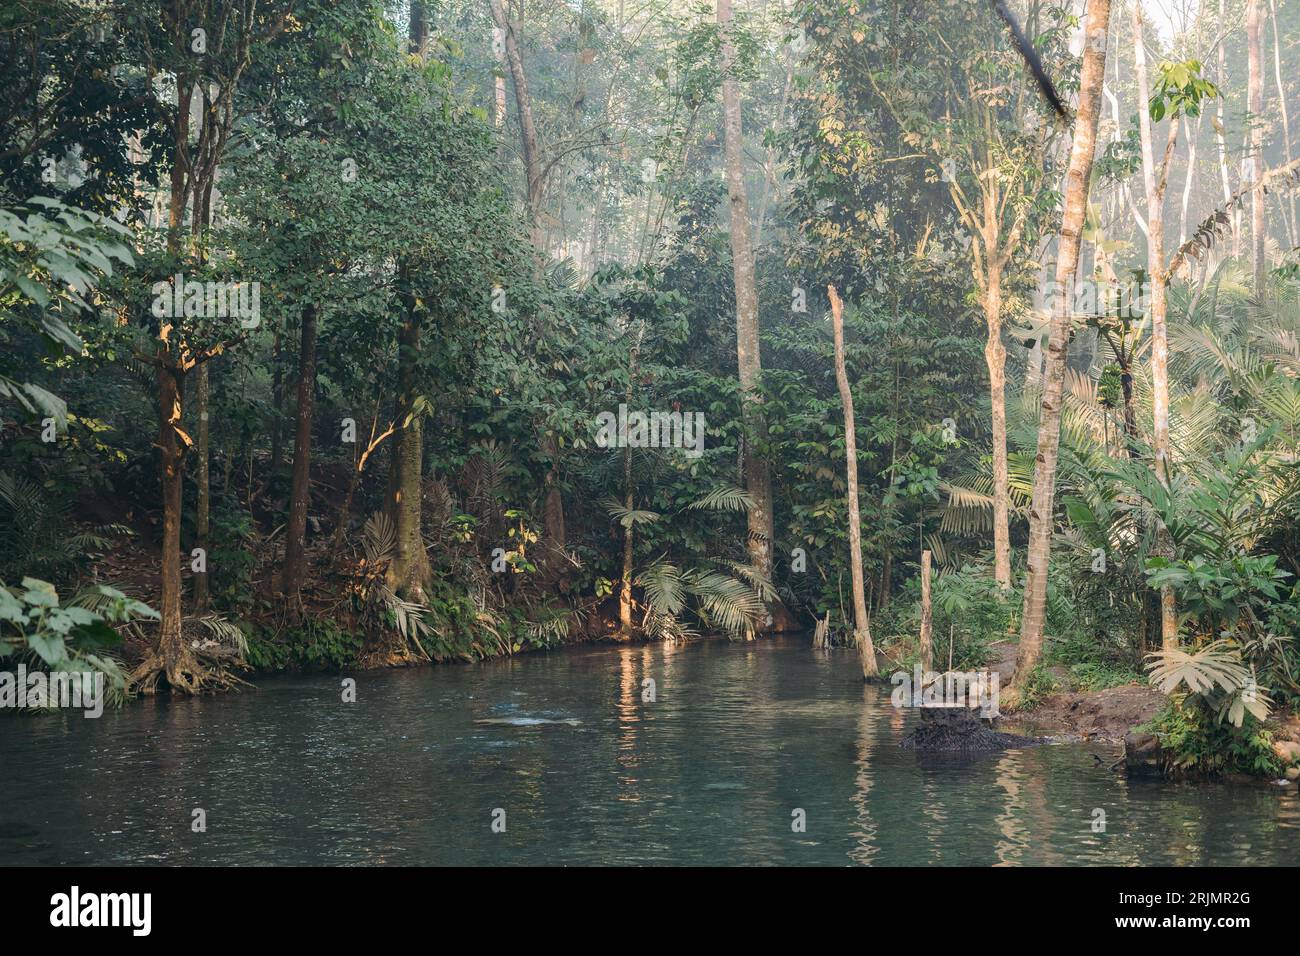 Piscine naturelle au milieu d'une forêt formée à partir d'une source de rivière. Peut être utilisé comme fond d'écran Banque D'Images